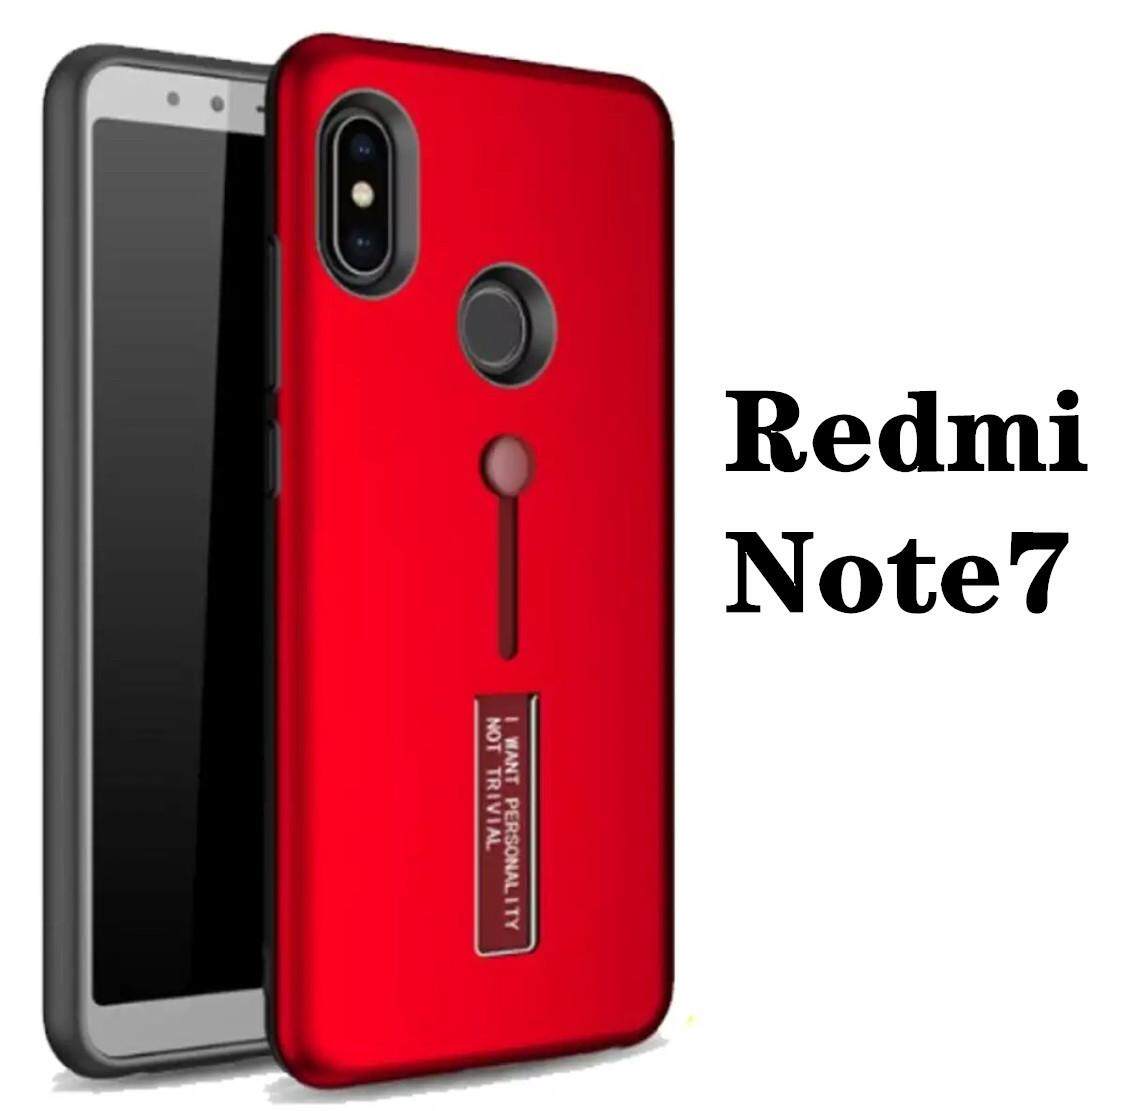 พร้อมส่งทันที Case Xiaomi Redmi Note7 เคสตั้งได้ เคสเสี่ยวมี่ เคสเสียวหมี่ เรดมี่ โน๊ต7 xiaomi redmi note7 สายคล้องนิ้ว แหวน รุ่นใหม่ เลื่อนได้ เคสกันกระแทก สวยหรู สินค้าใหม่ รับประกันความพอใจในสินค้า